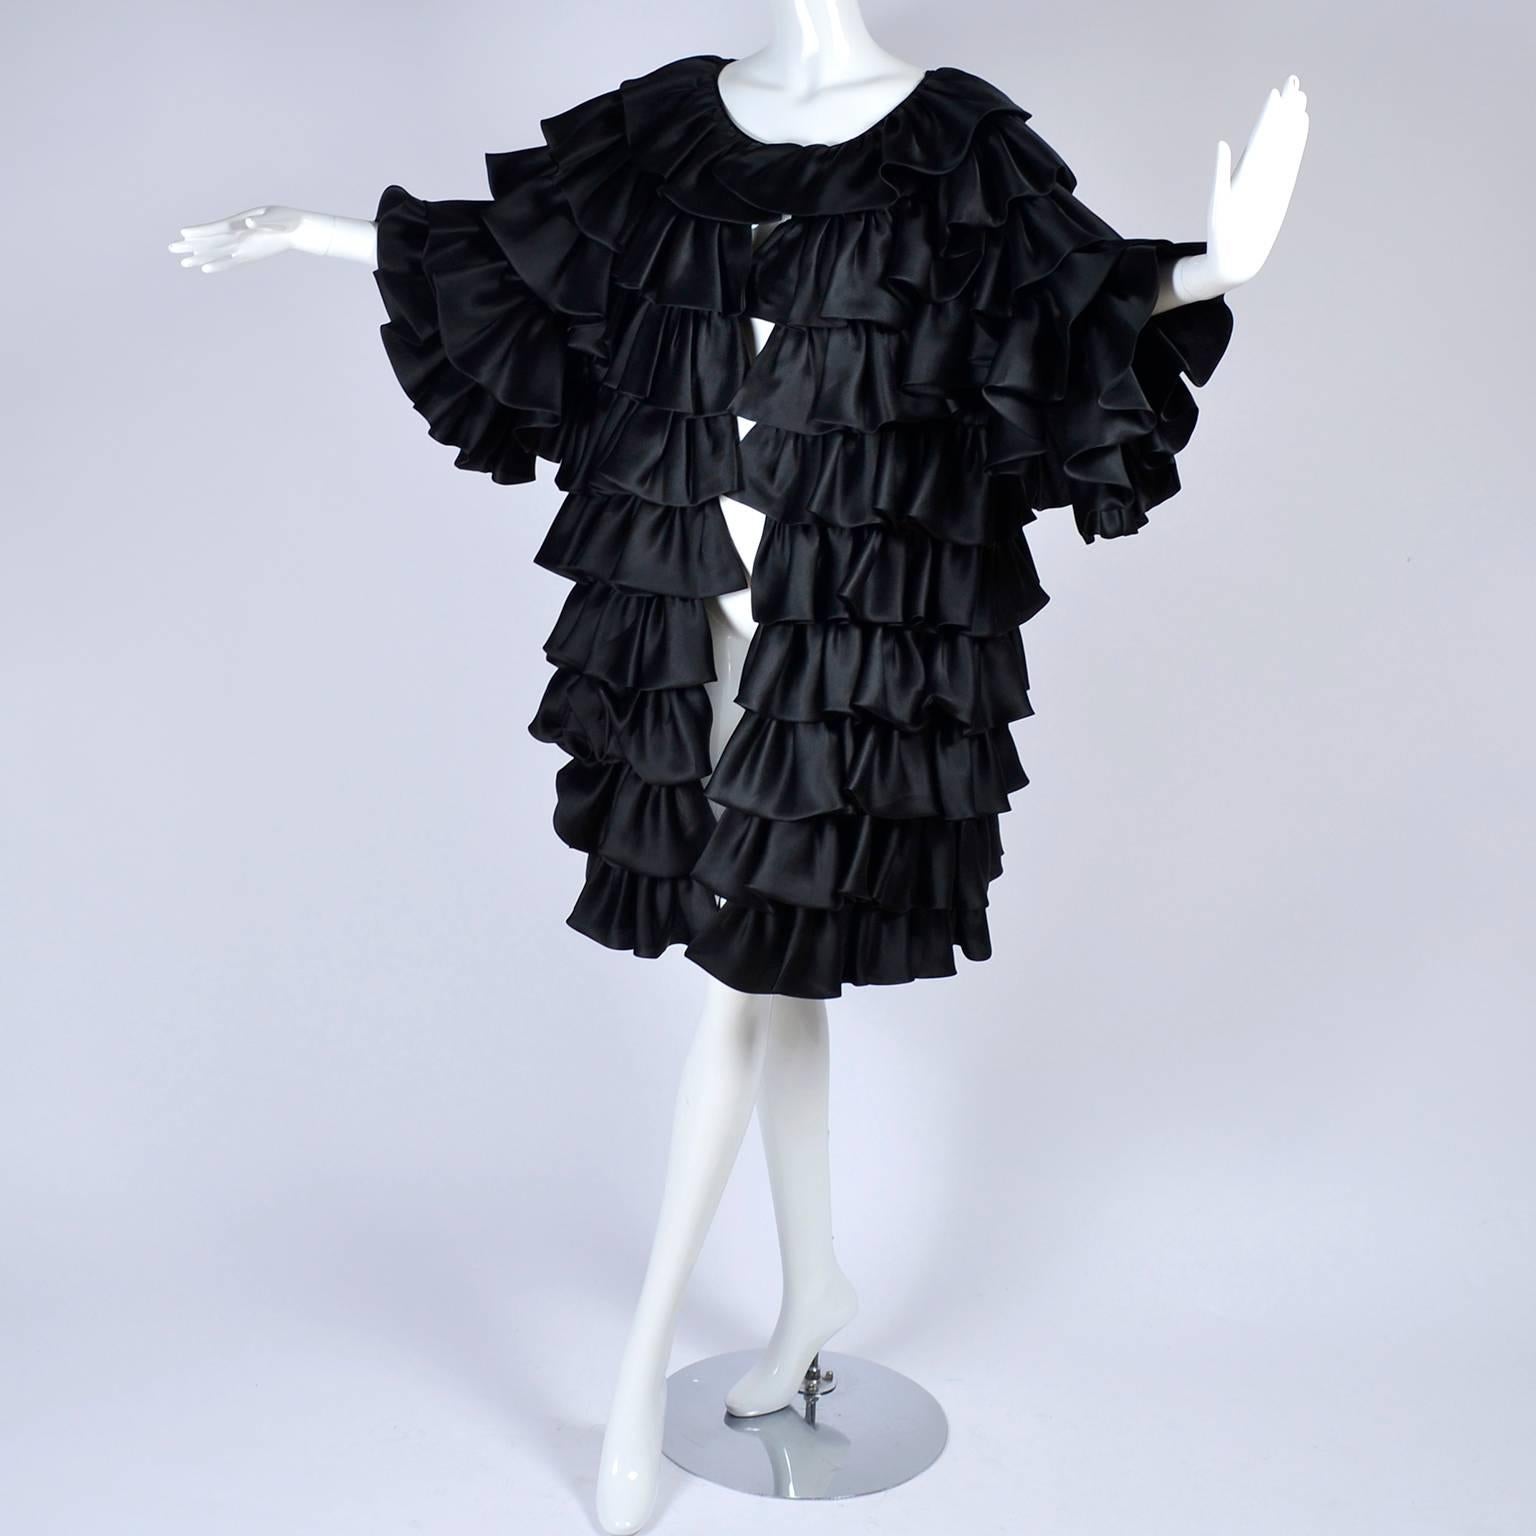 Vintage Oscar de la Renta Silk Evening Coat with Black Ruffles Lined in Organza 3